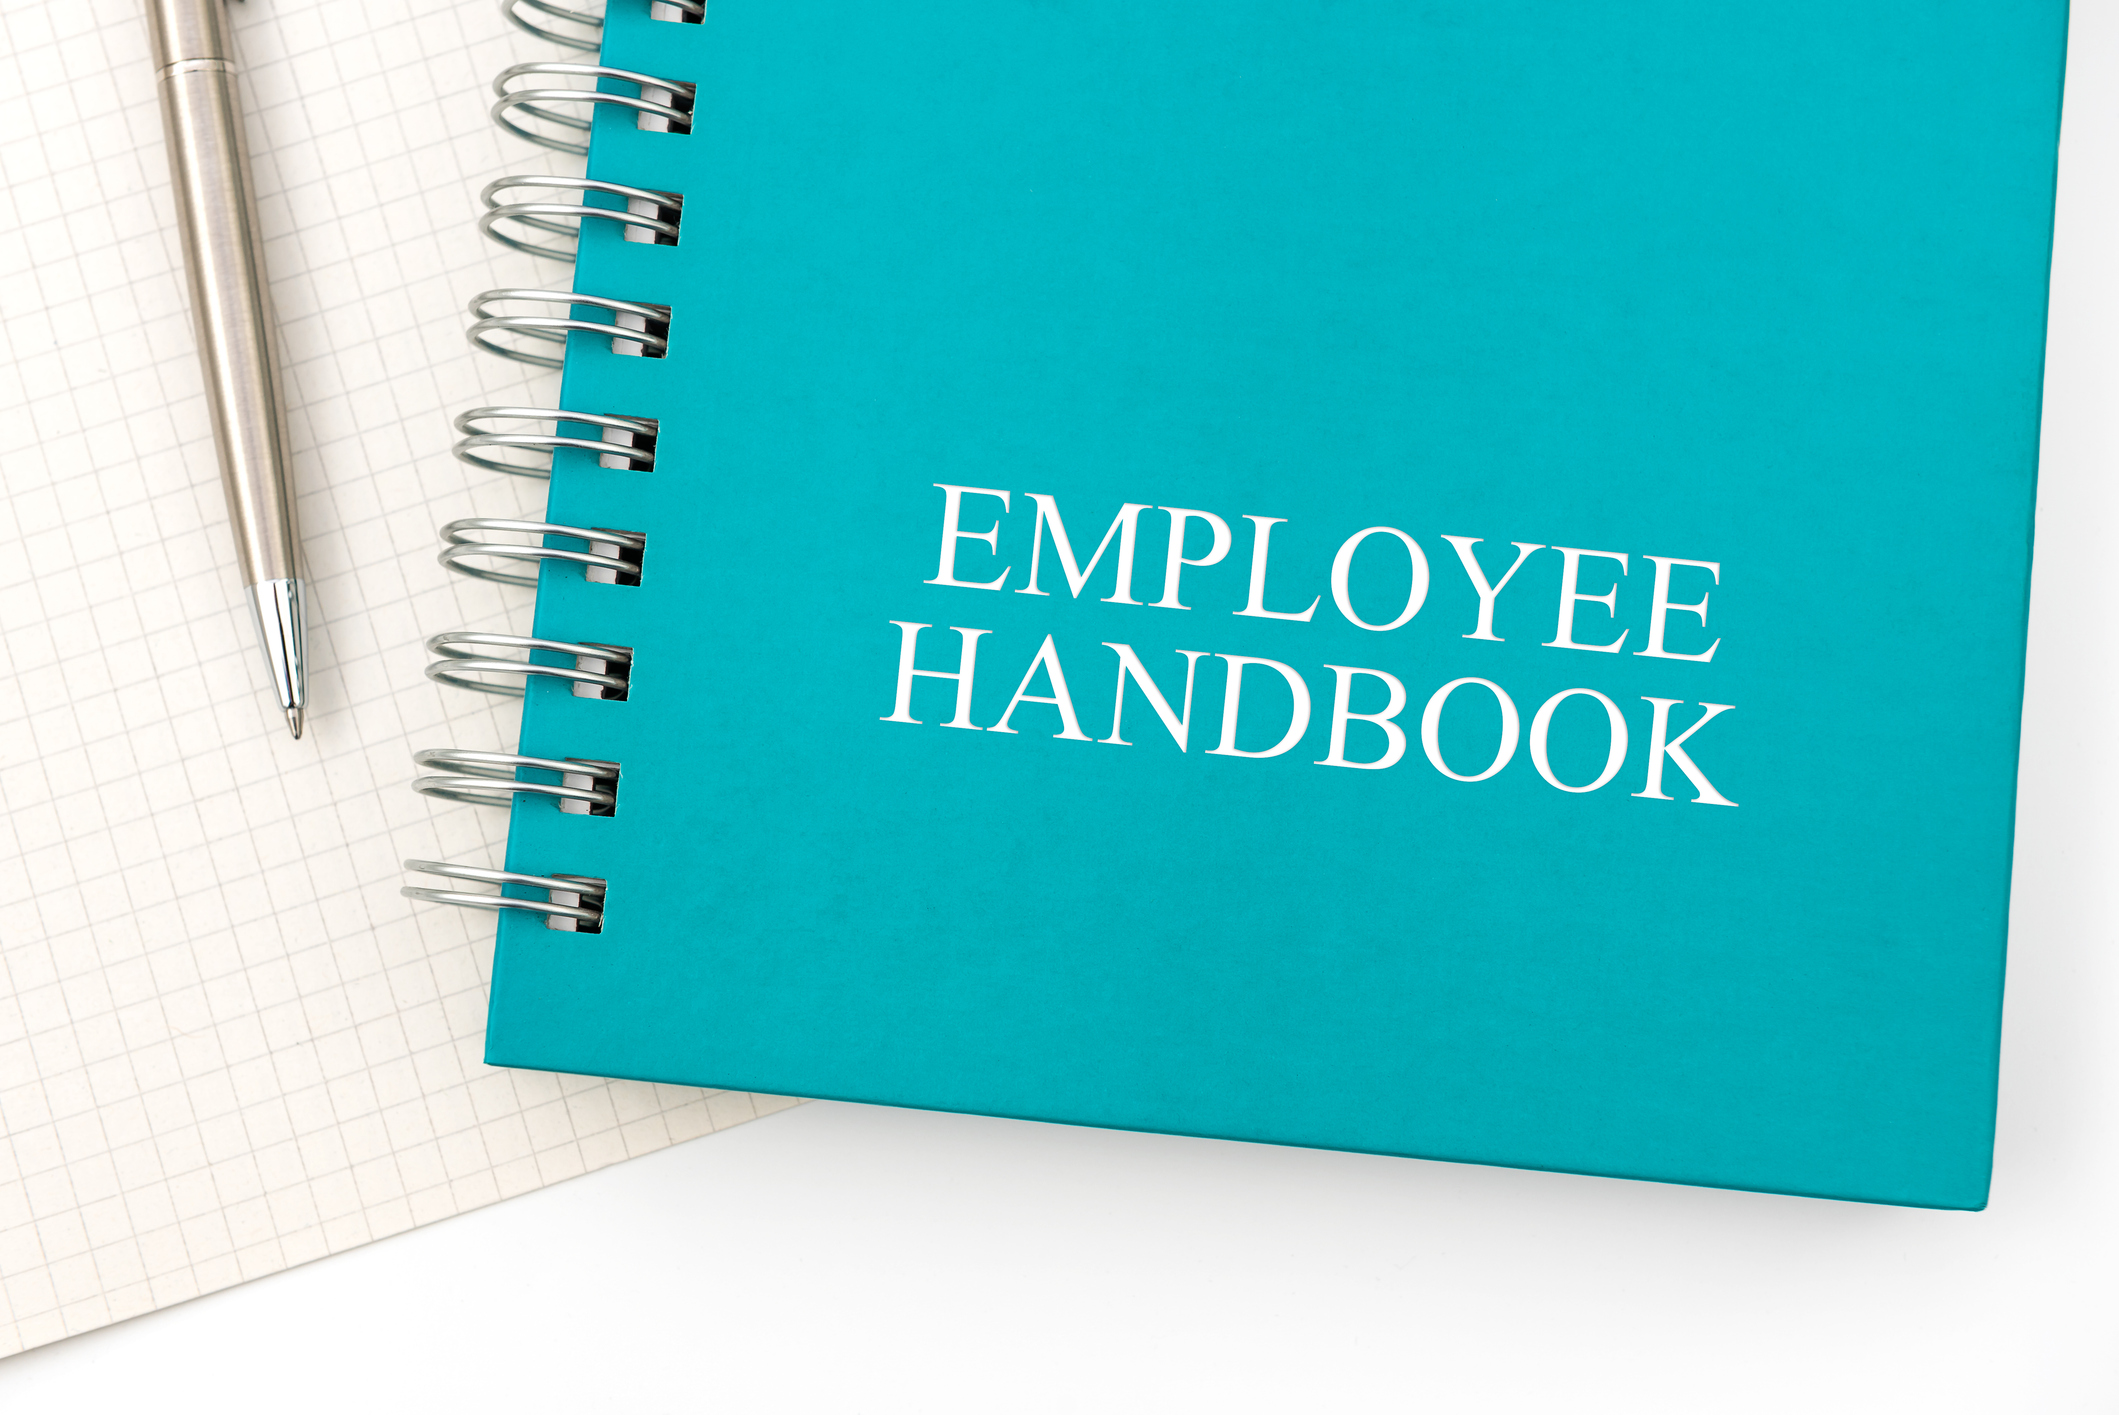 Employee handbook image